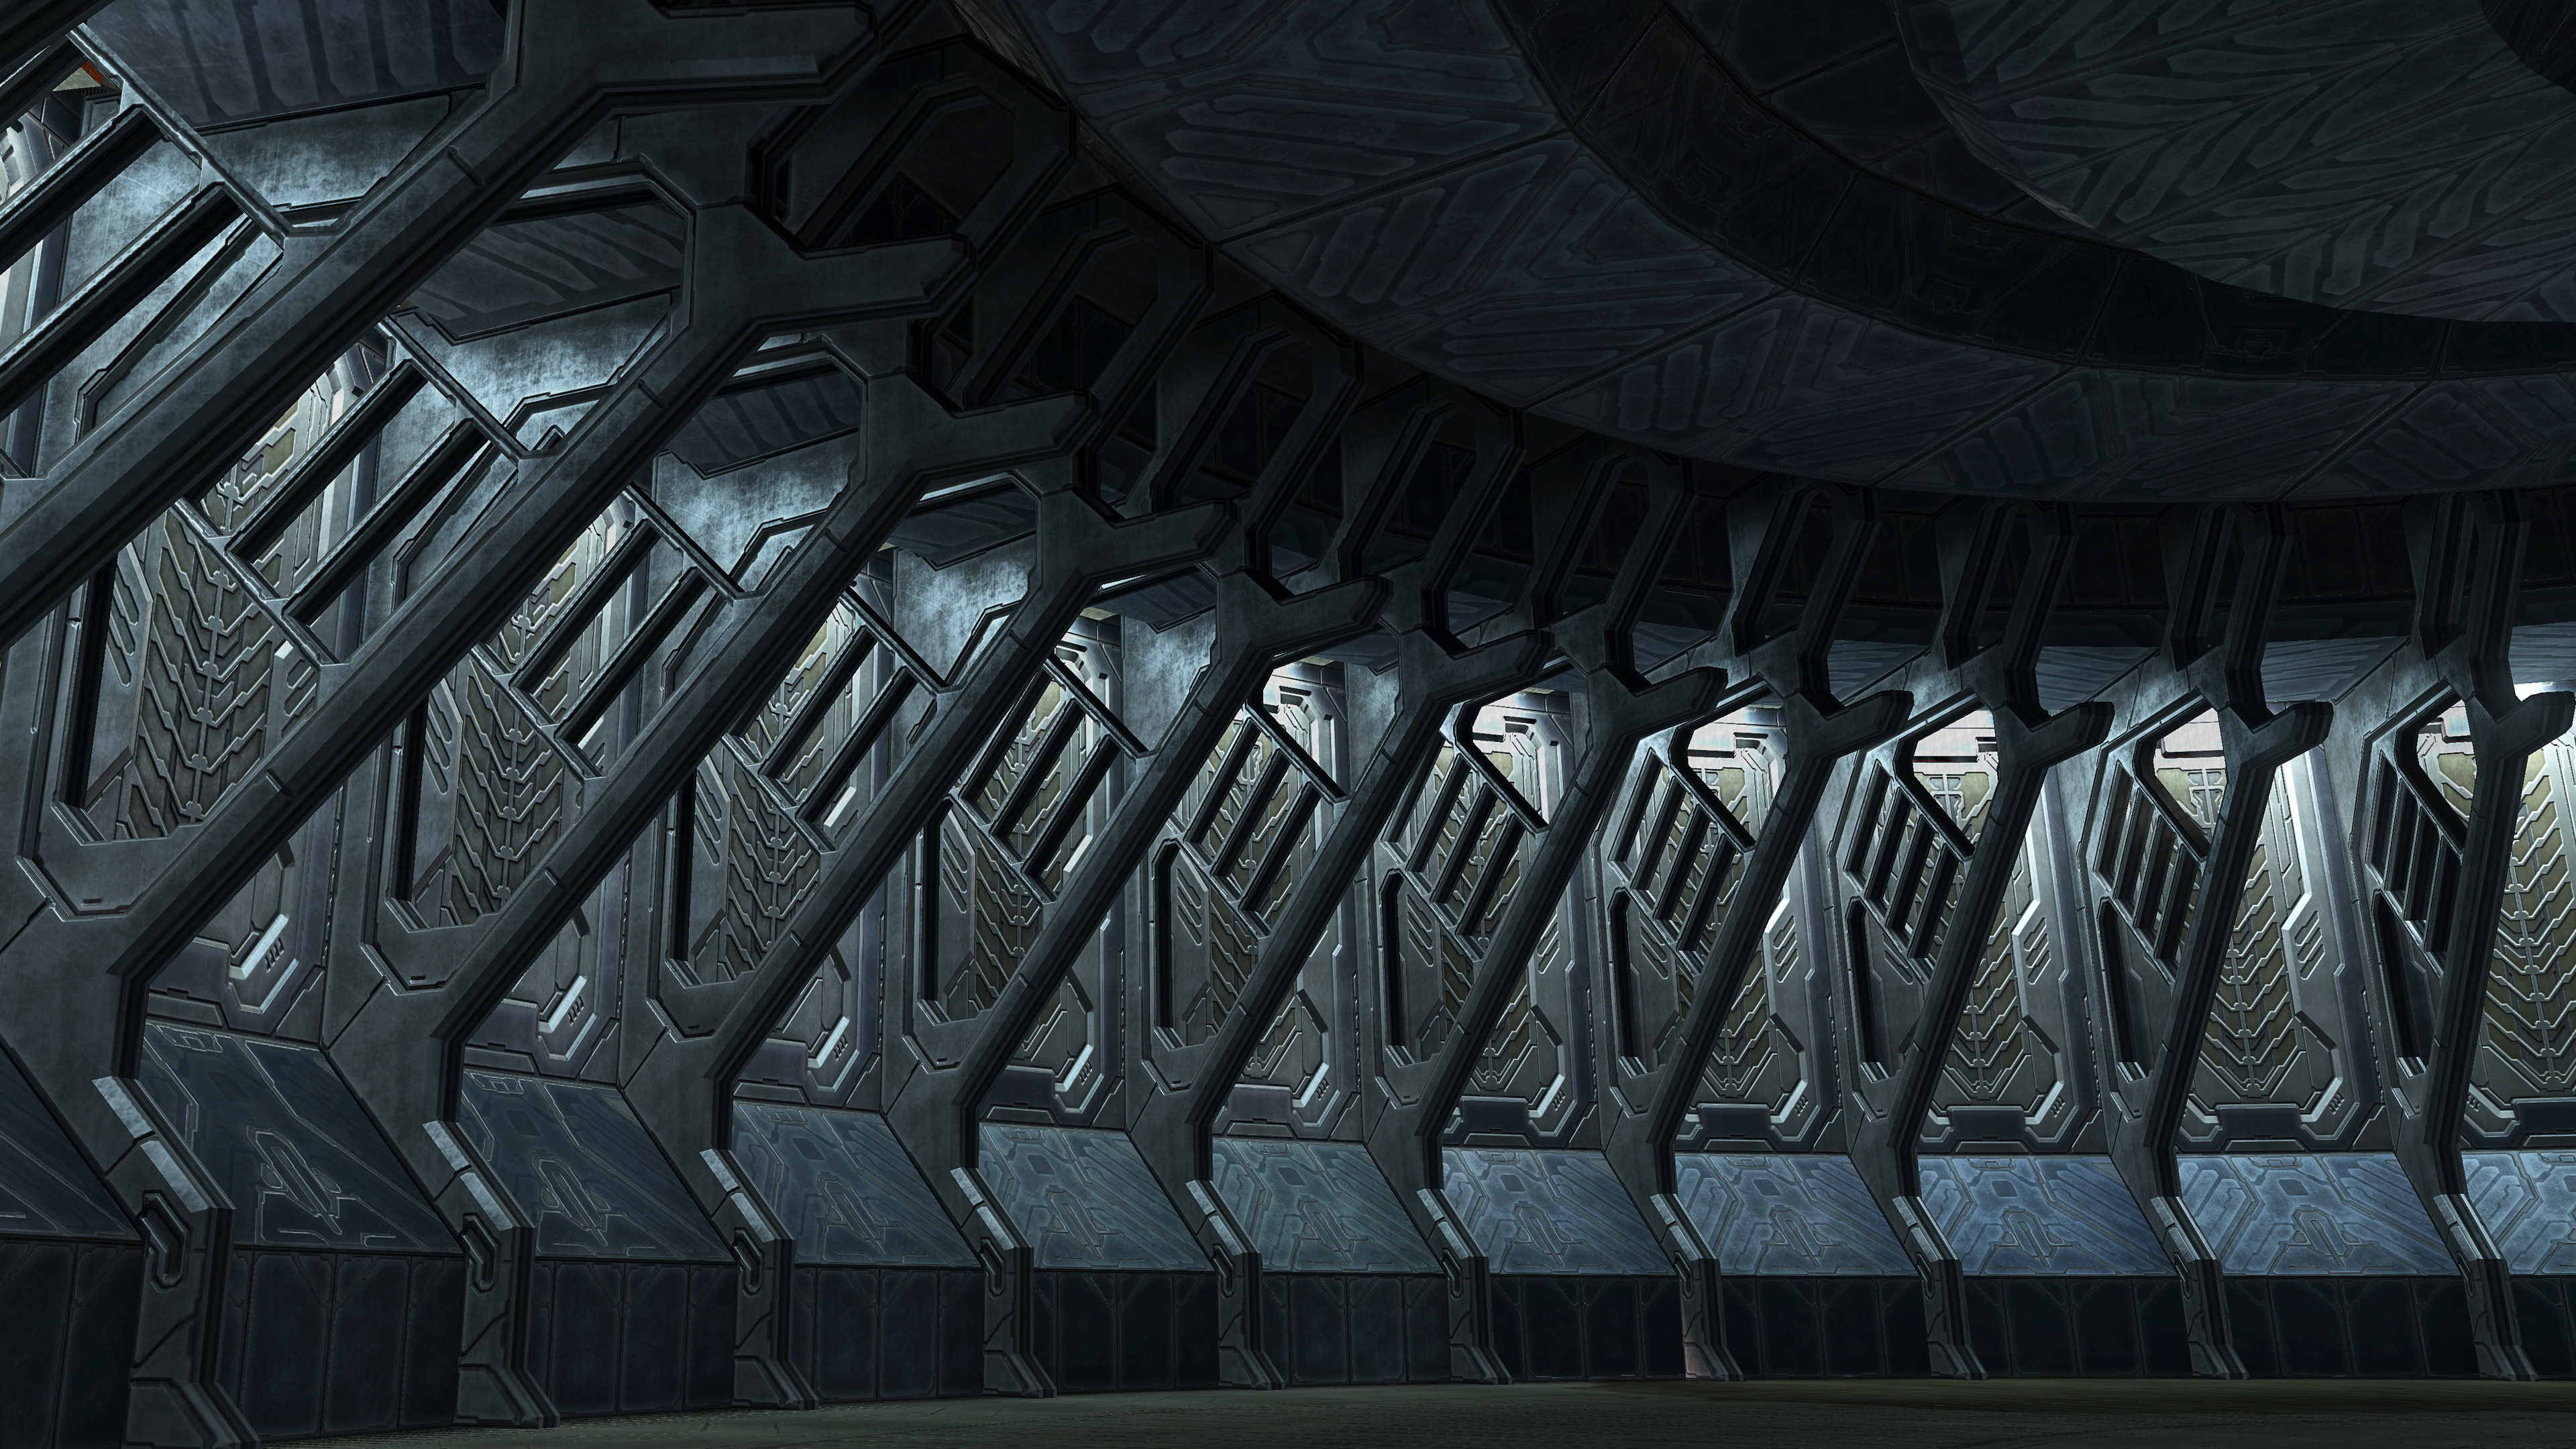 Halo 3 - Transision loading area.